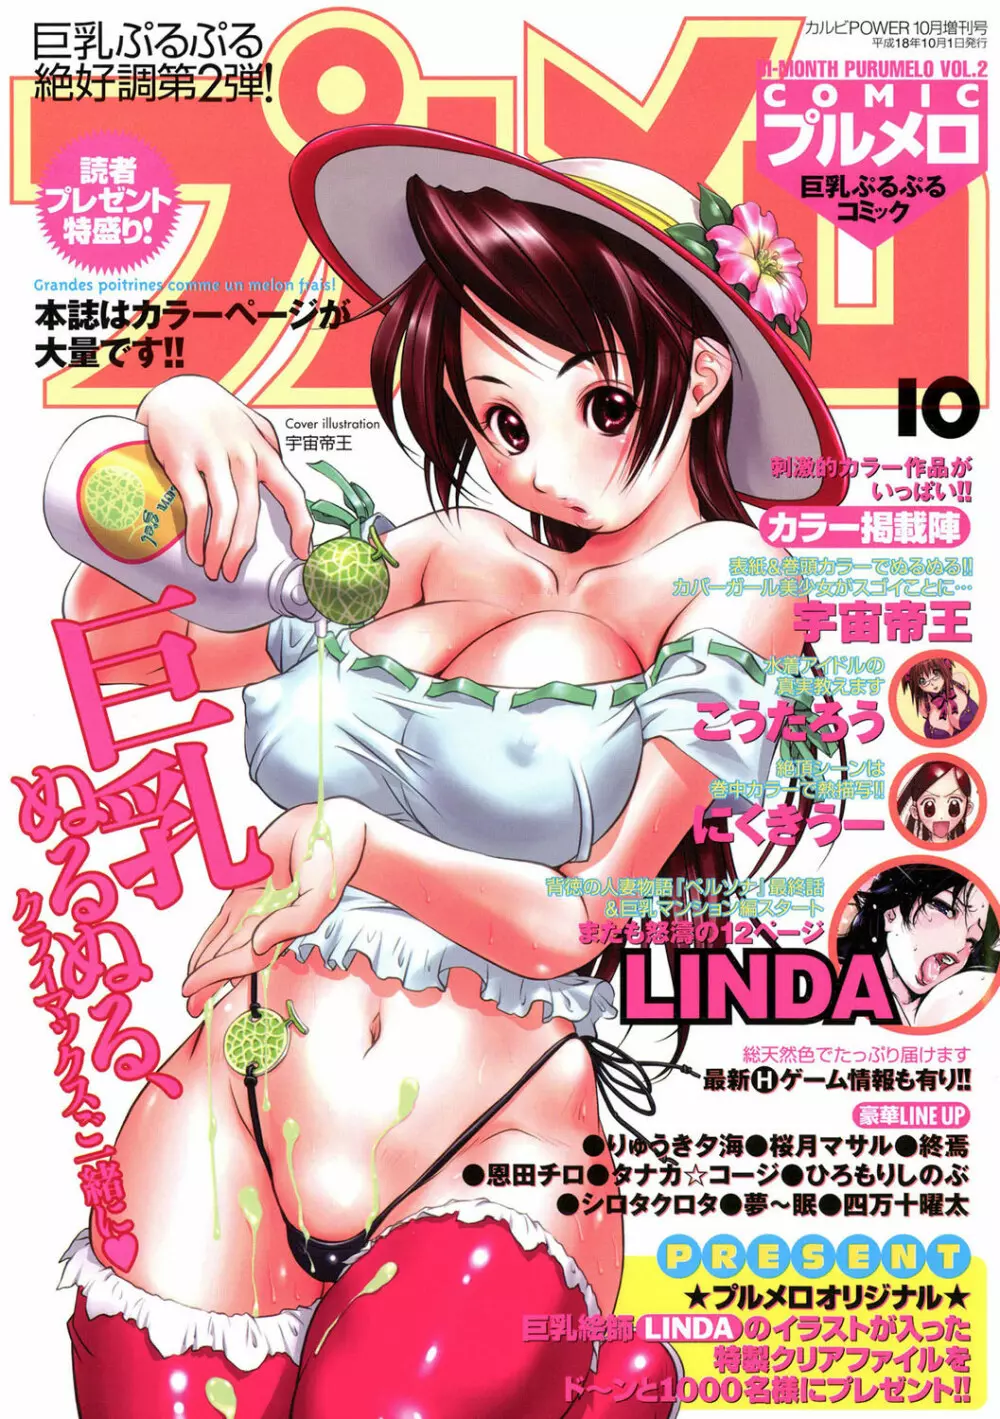 COMICプルメロ 2006年10月号 Vol.2